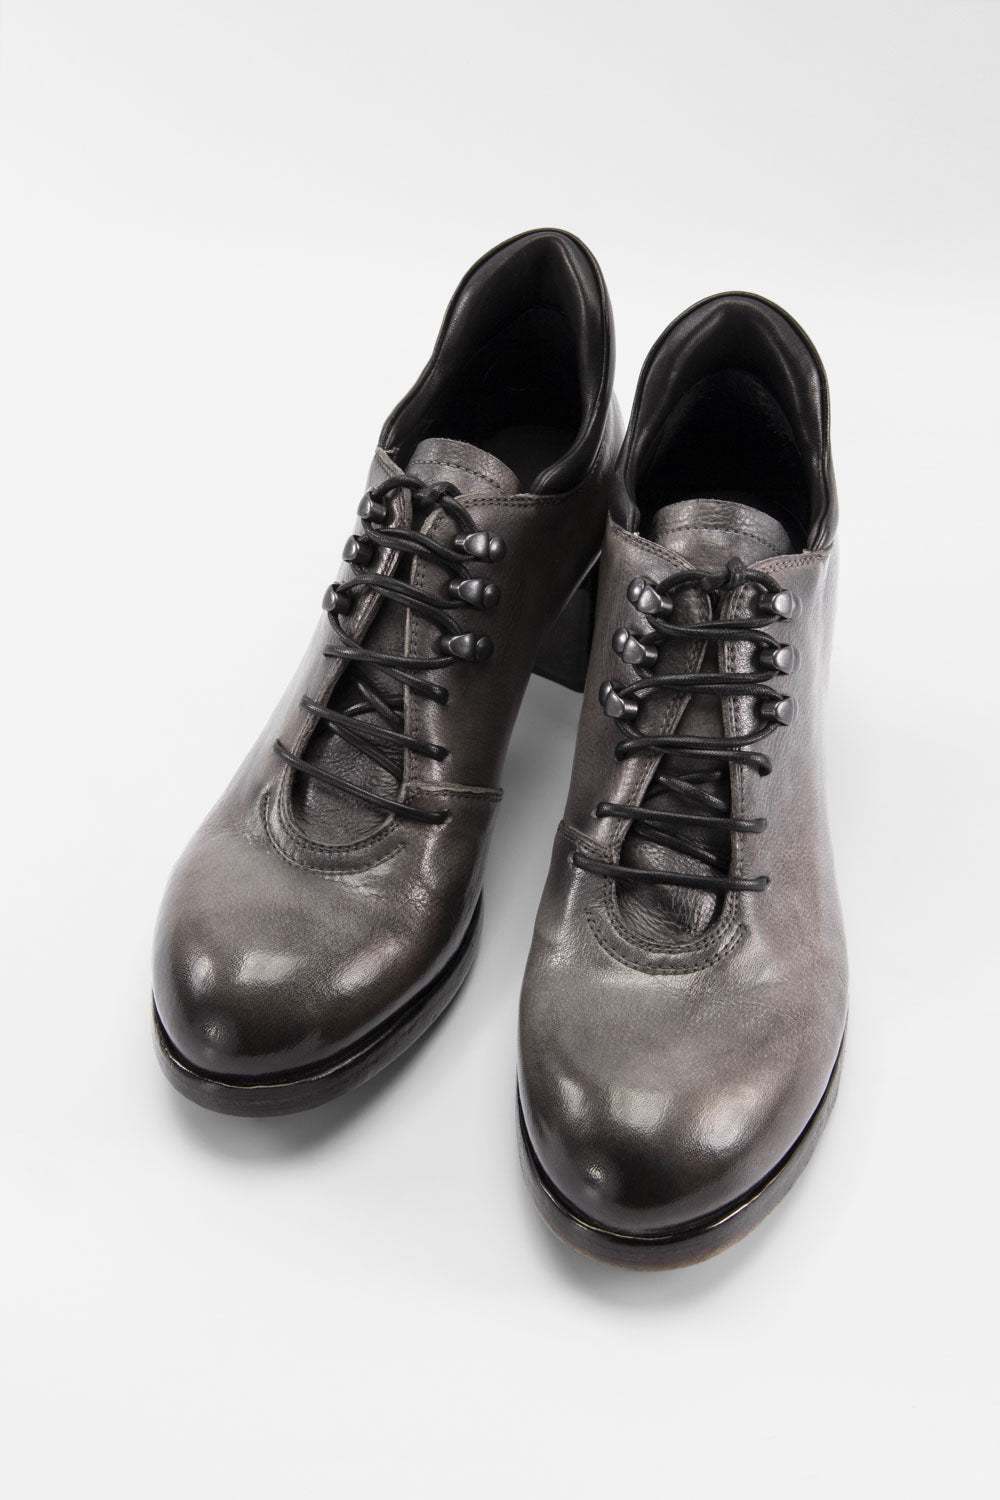 MADISON ice-grey lace-up hiking shoes.